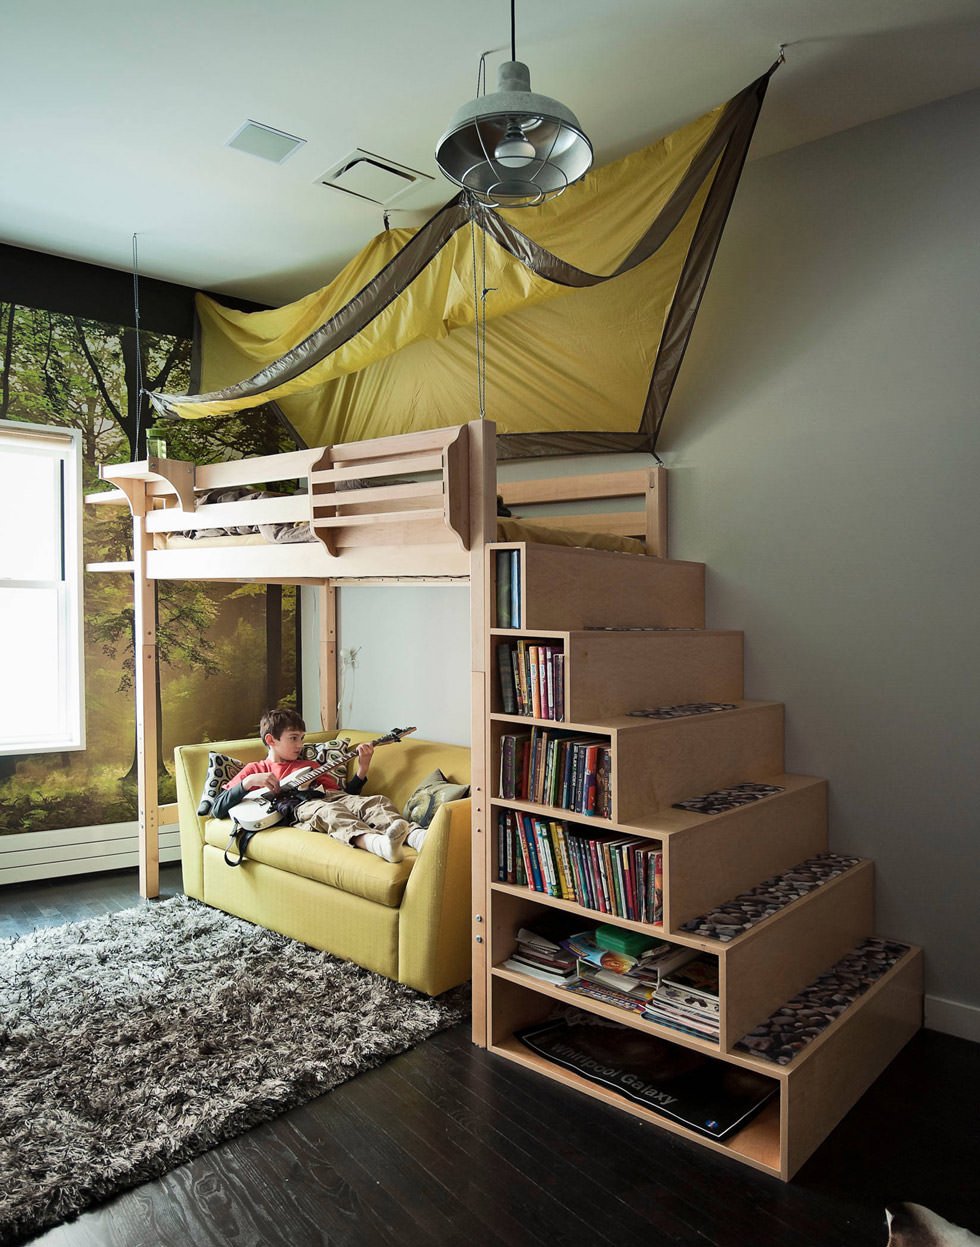 Camera ragazzo con letto a soppalco - le scale hanno anche la funzione di libreria, per contenitore libri o vari oggetti - la stanza ideale per un piccolo scout